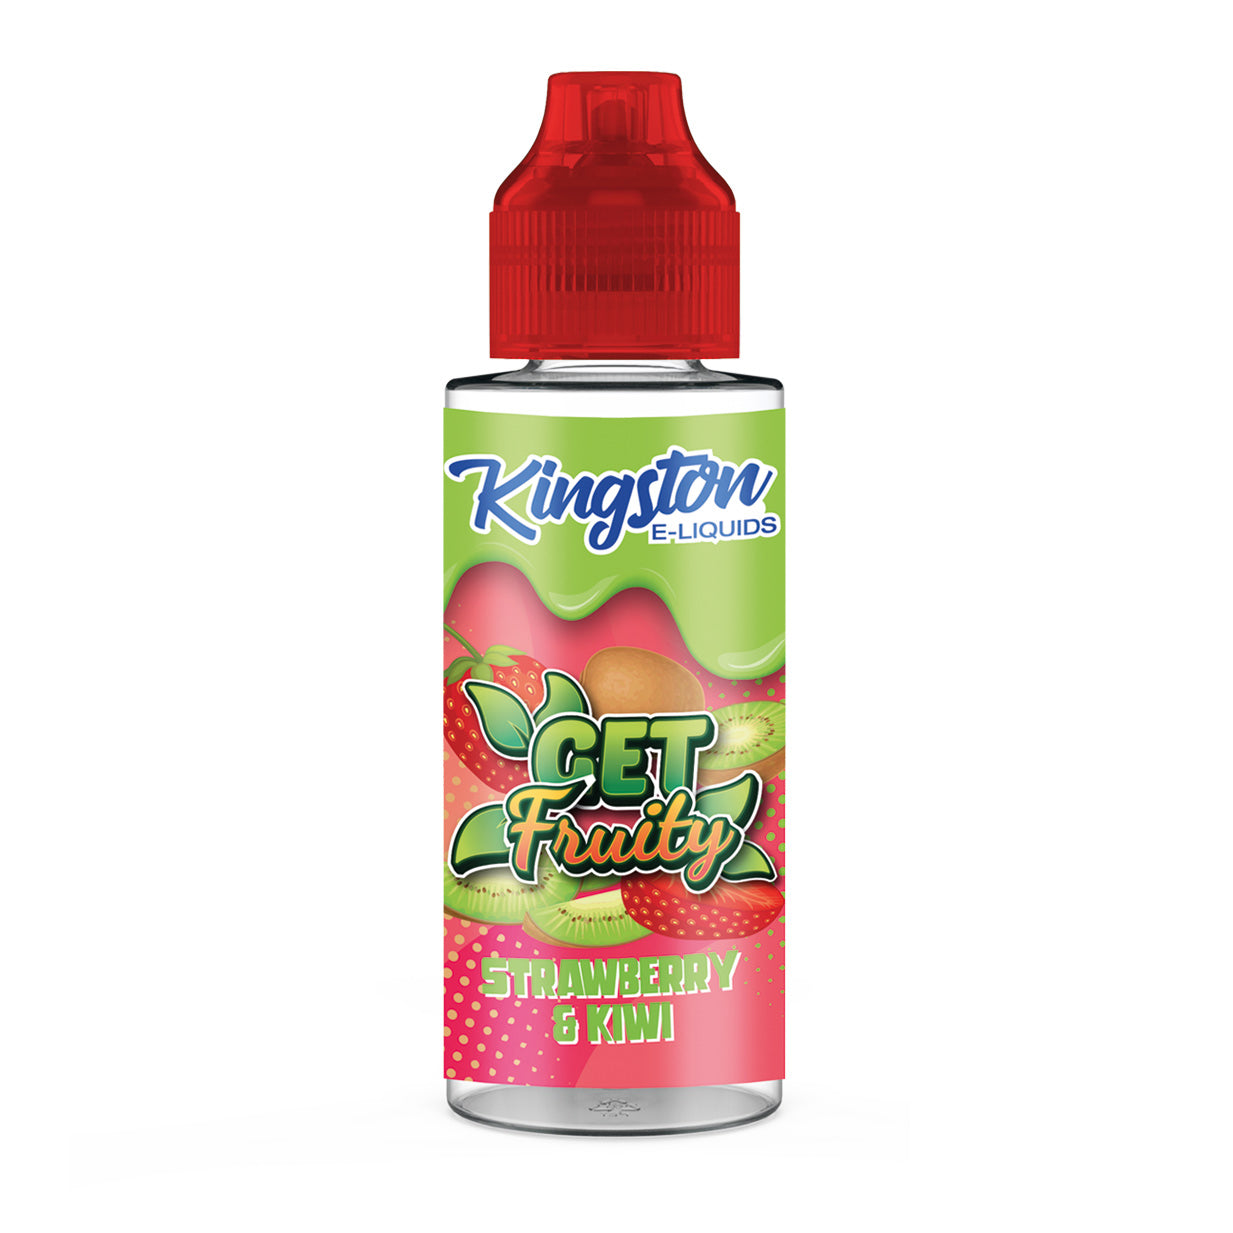 Kingston-Get-Fruity-Strawberry-Kiwi-kingston-e-liquids-100ml-vape-juice-e-juice-shortfill-eliquidsoutlet